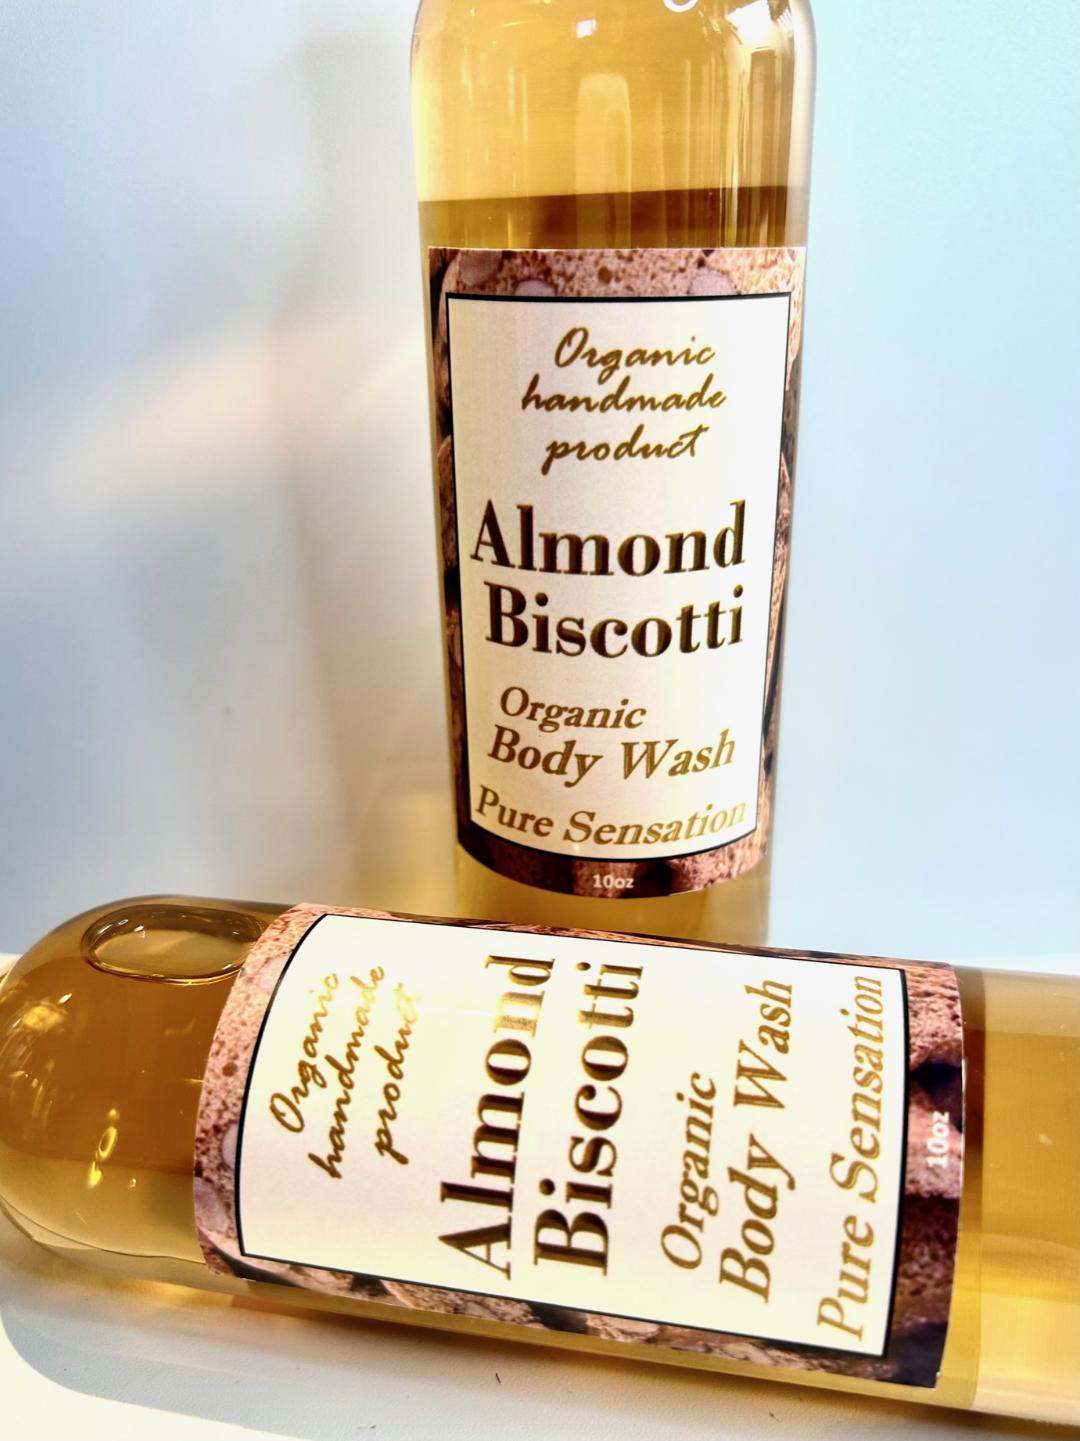 Almond Biscotti Organic Body Wash /  Natural Daily Moisturizer  / Shower Gel - $15.00